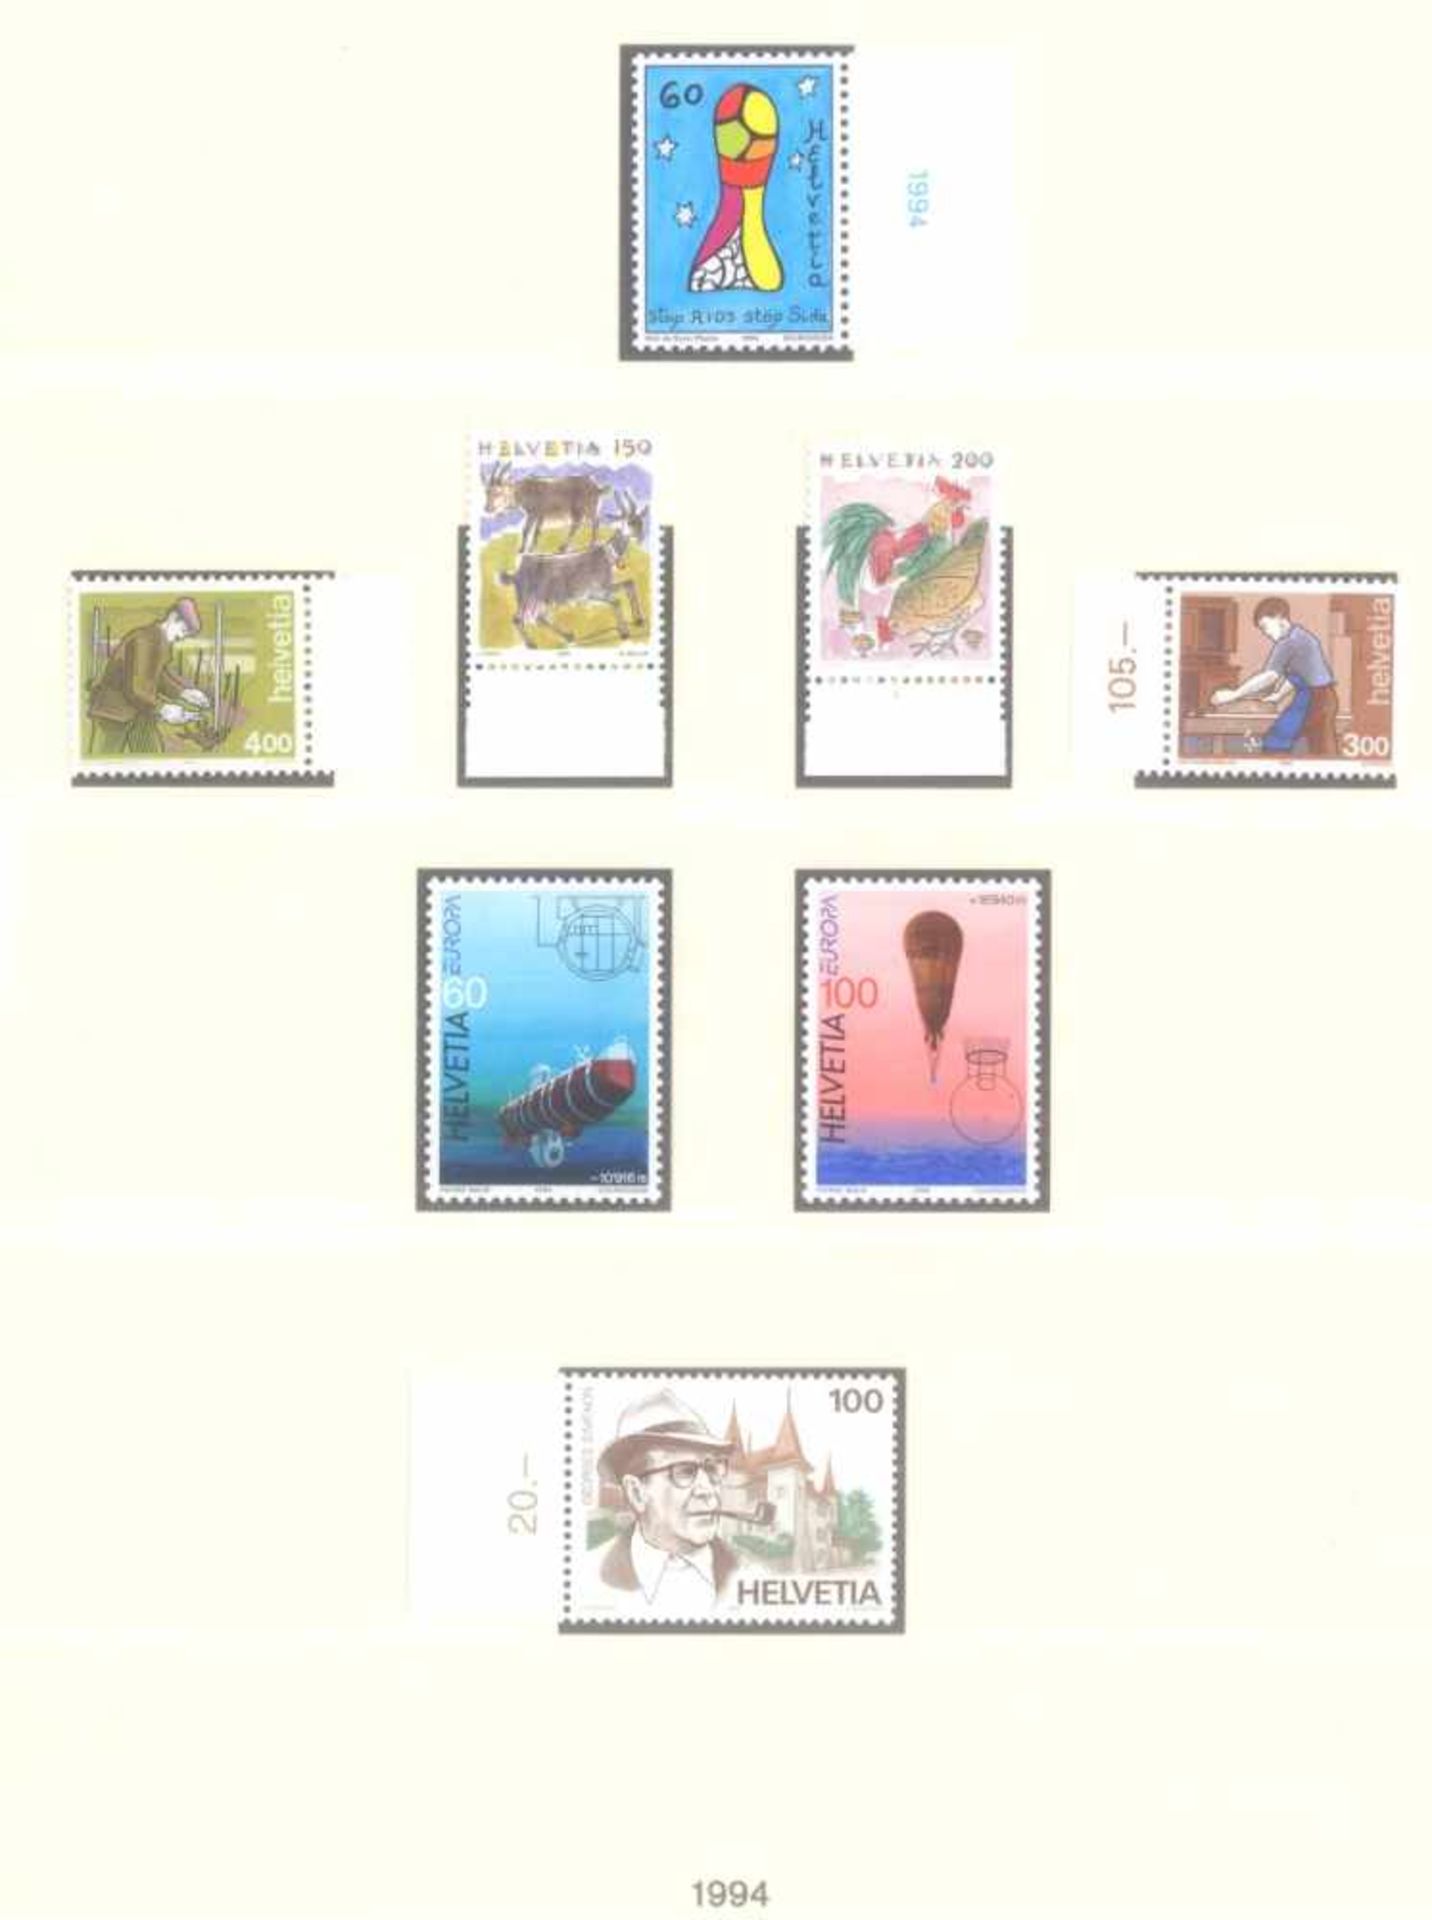 SCHWEIZ 1991-2003; mit 416,- SCHWEIZER FRANKEN NOMINALE!postfrische, komplette Sammlung - nach den - Bild 3 aus 8